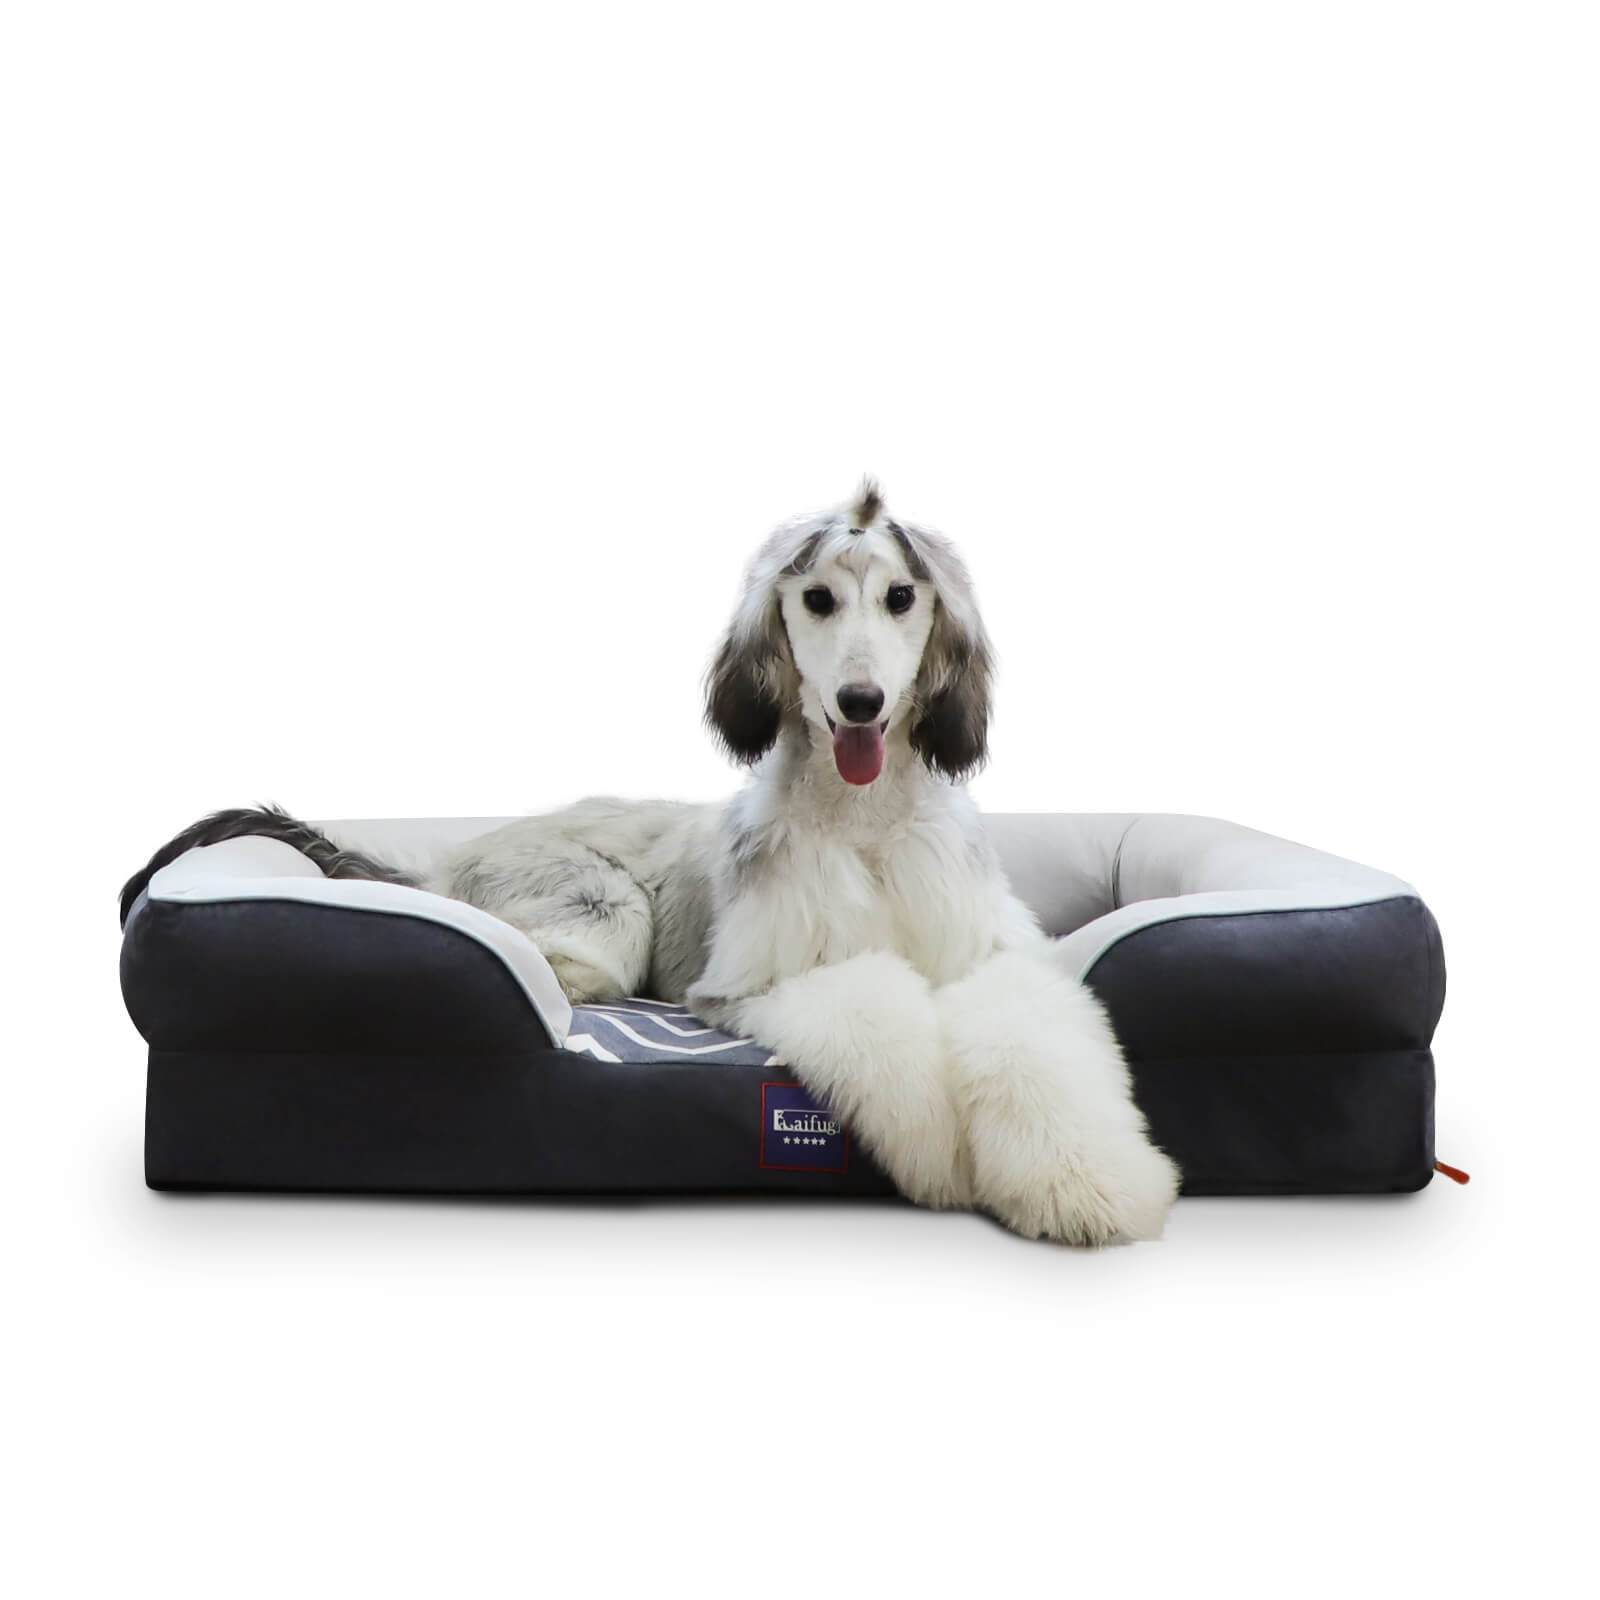 Laifug Striped Dog Sofa - large dog bed Large(38"*30"*9")